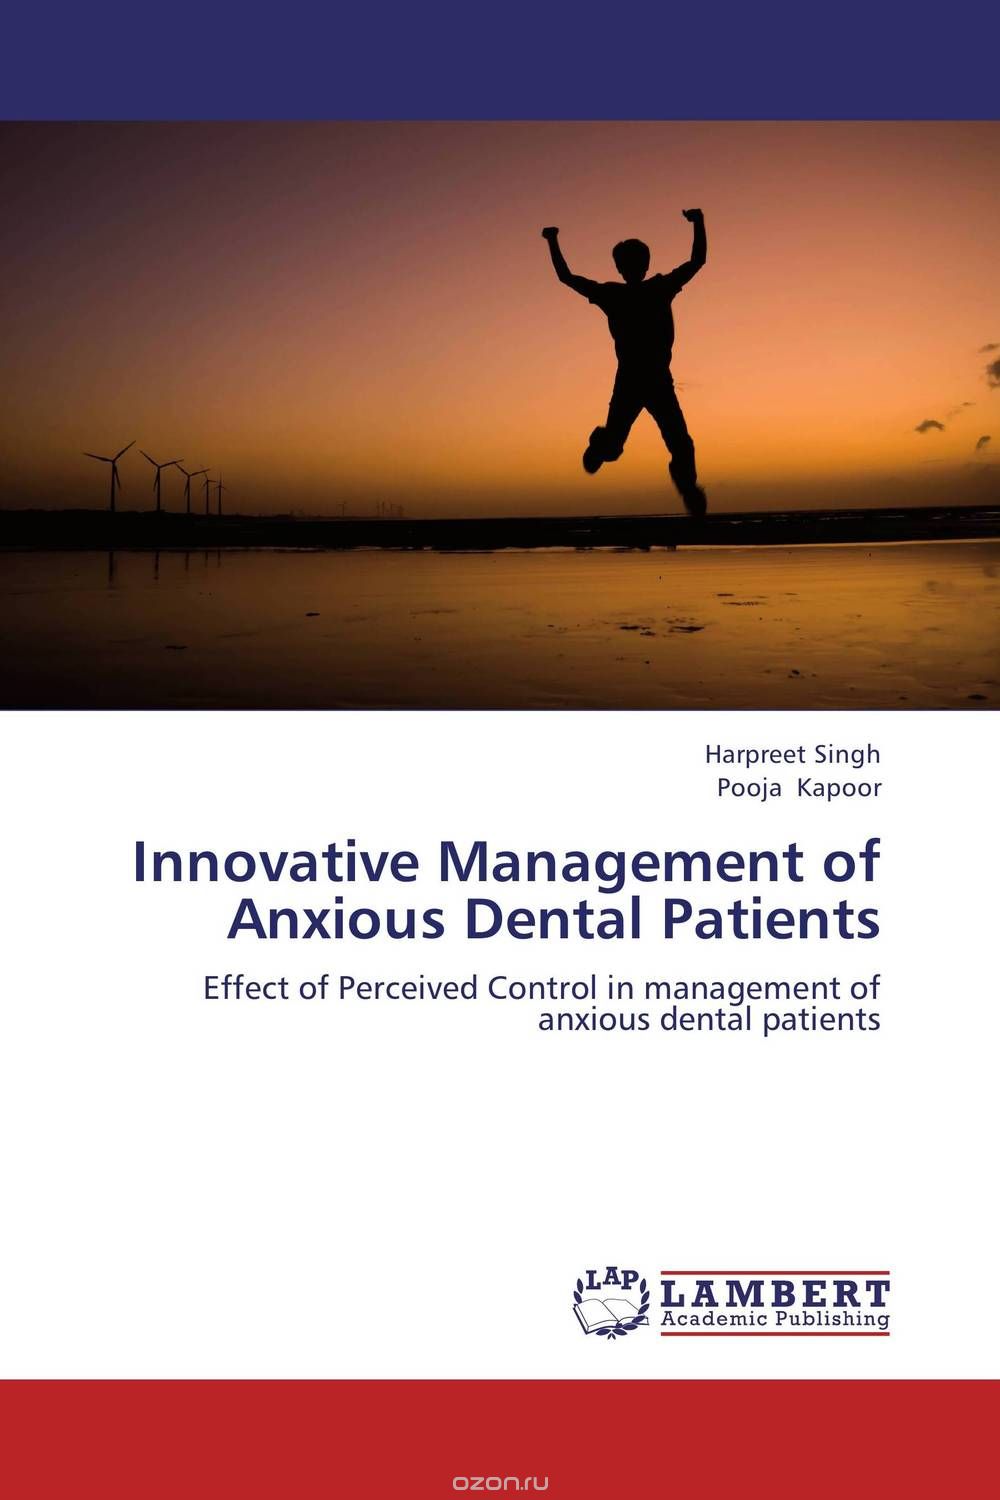 Скачать книгу "Innovative Management of Anxious Dental Patients"